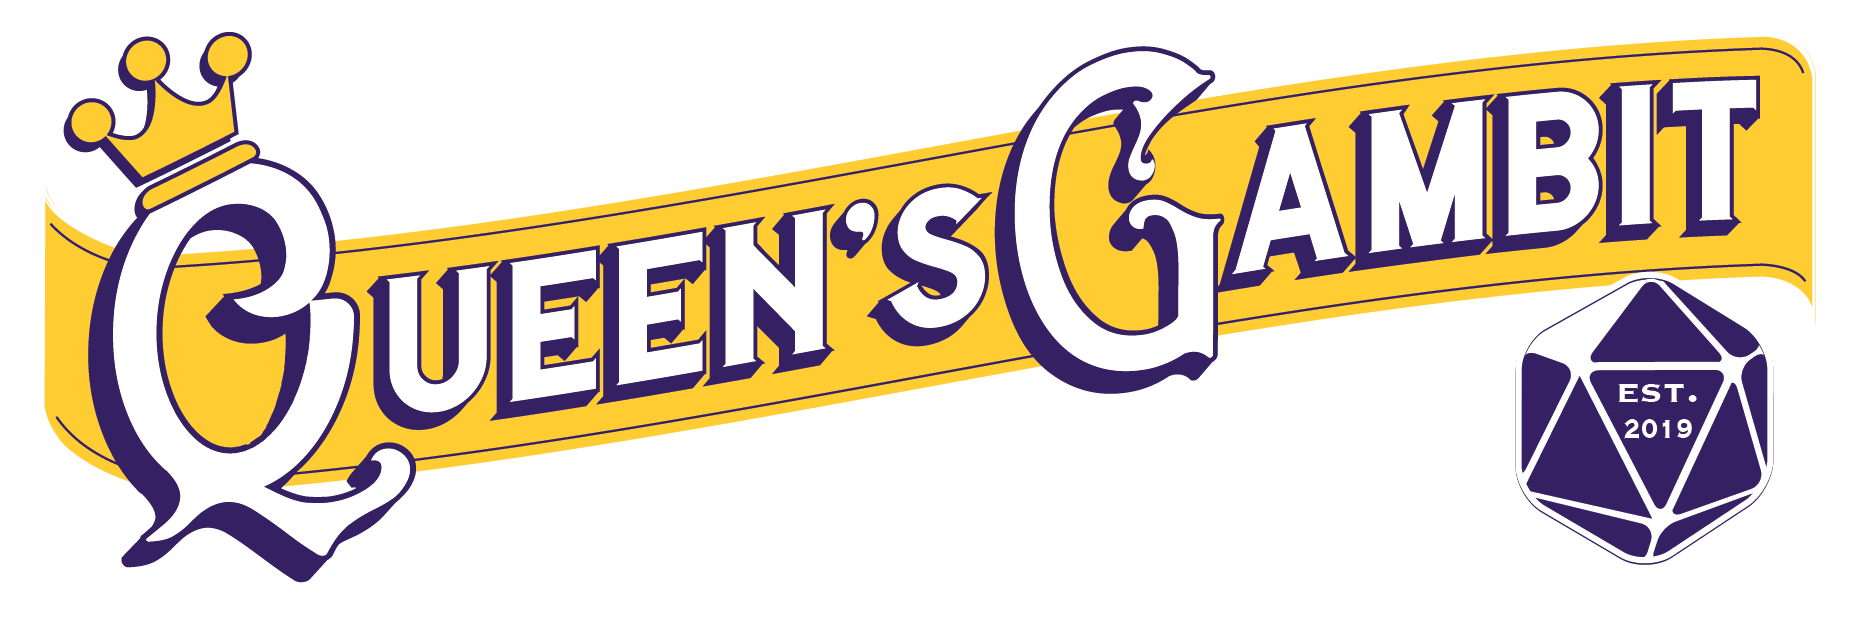 Queens Gambit - Games & Hobby Shoppe